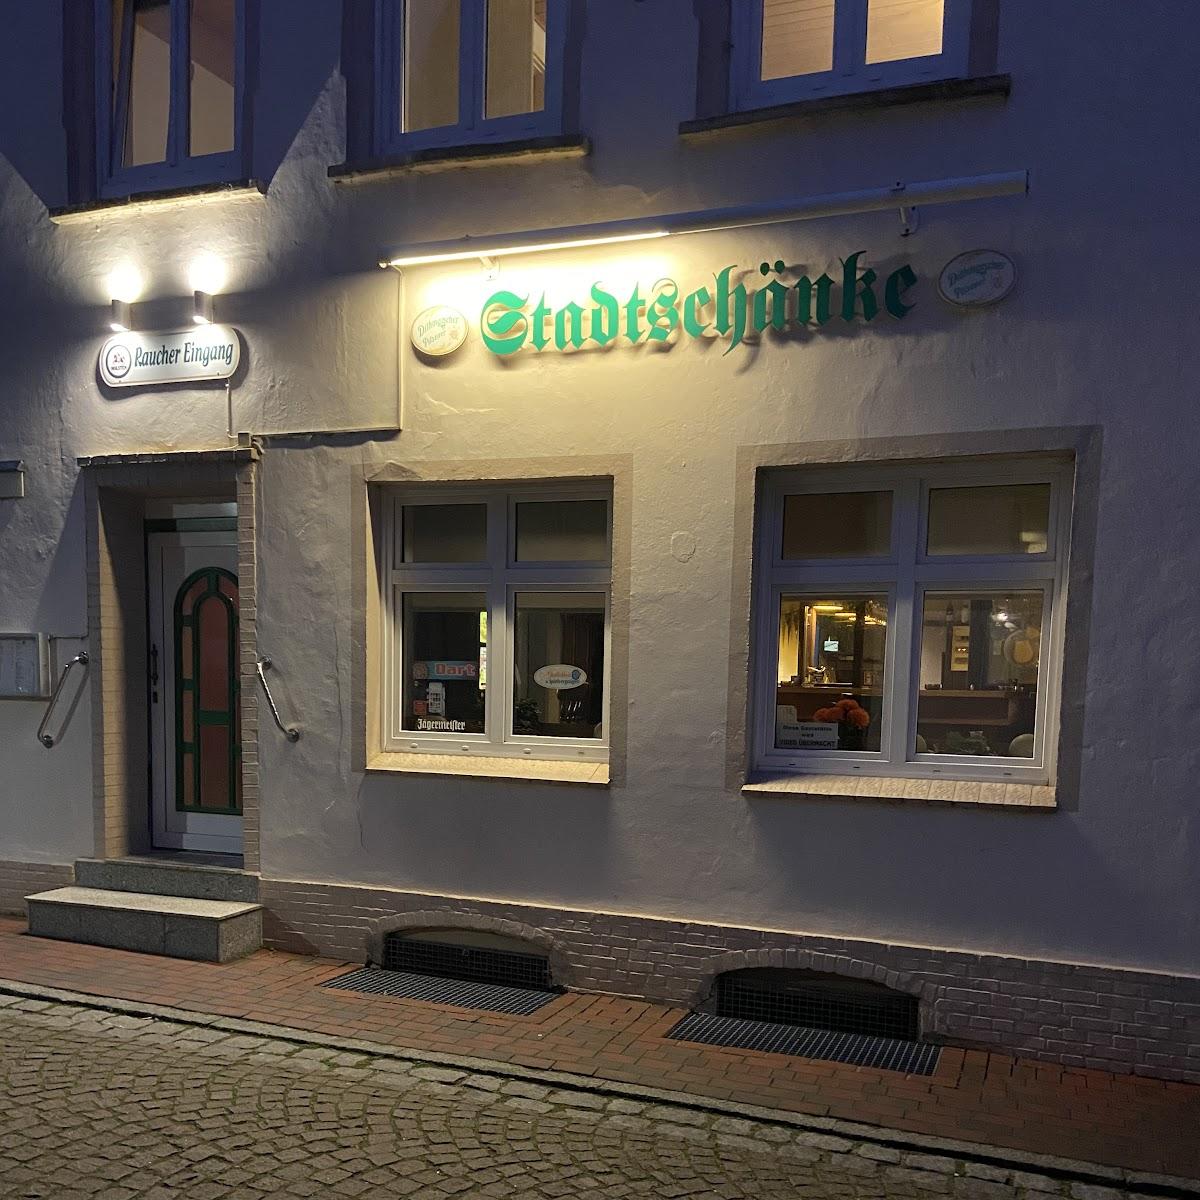 Restaurant "Stadtschänke" in Meldorf